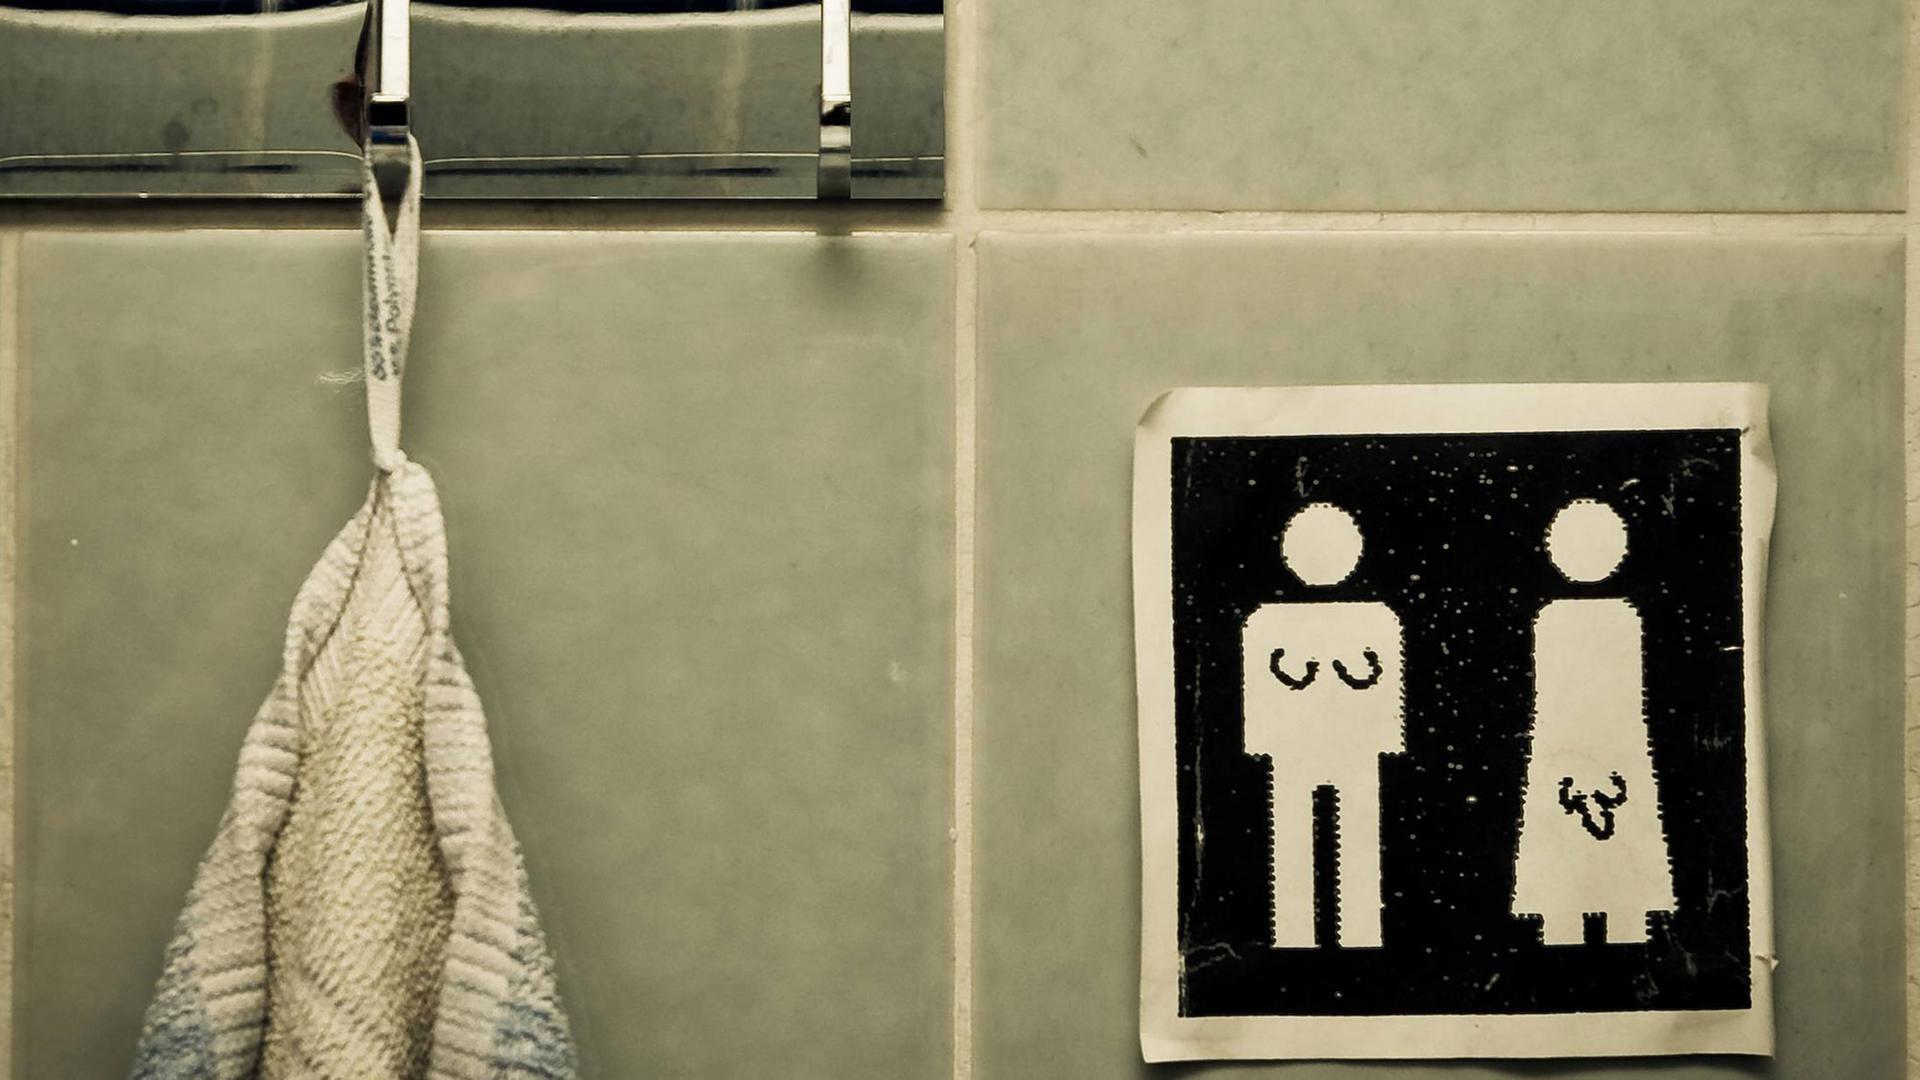 Unisex Handtuch. Symbole auf einem Schild: Für Männer und Frauen. Jemand hat signifikante Körpermerkmale für Transgender People ergänzt.